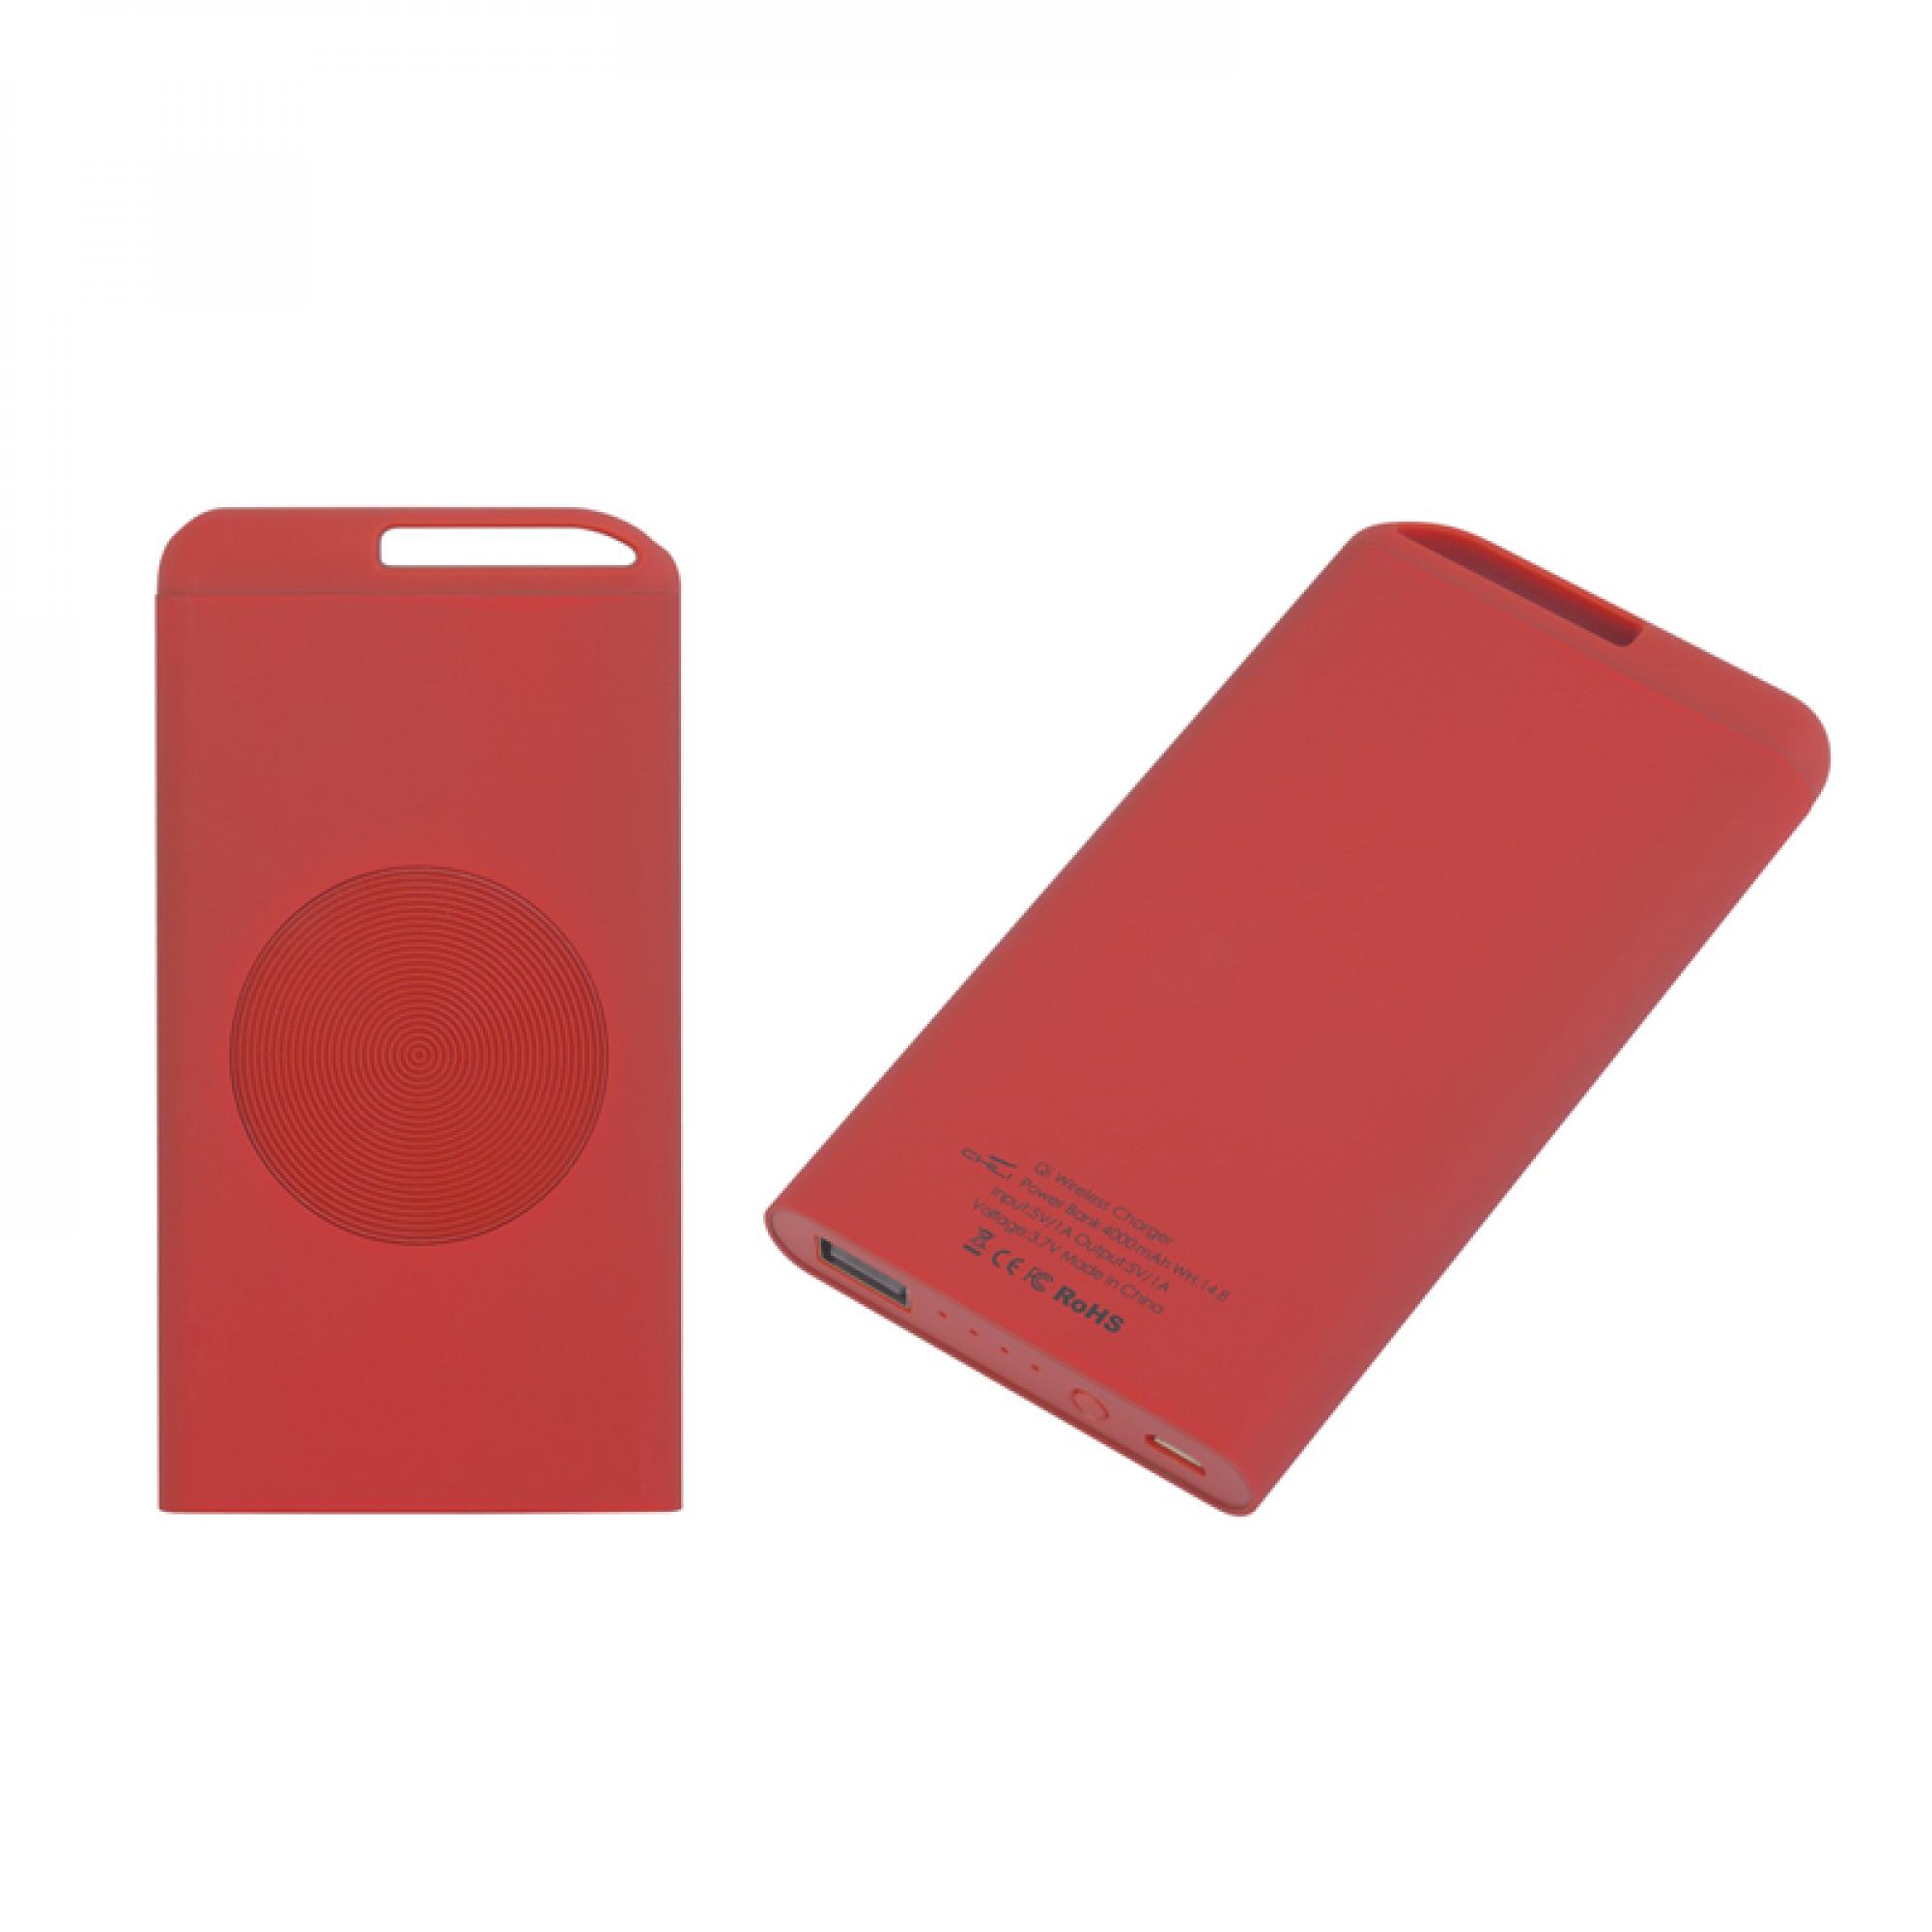 Беспроводное зарядное устройство "Theta Wireless", 4000 mAh, цвет красный, фото 2